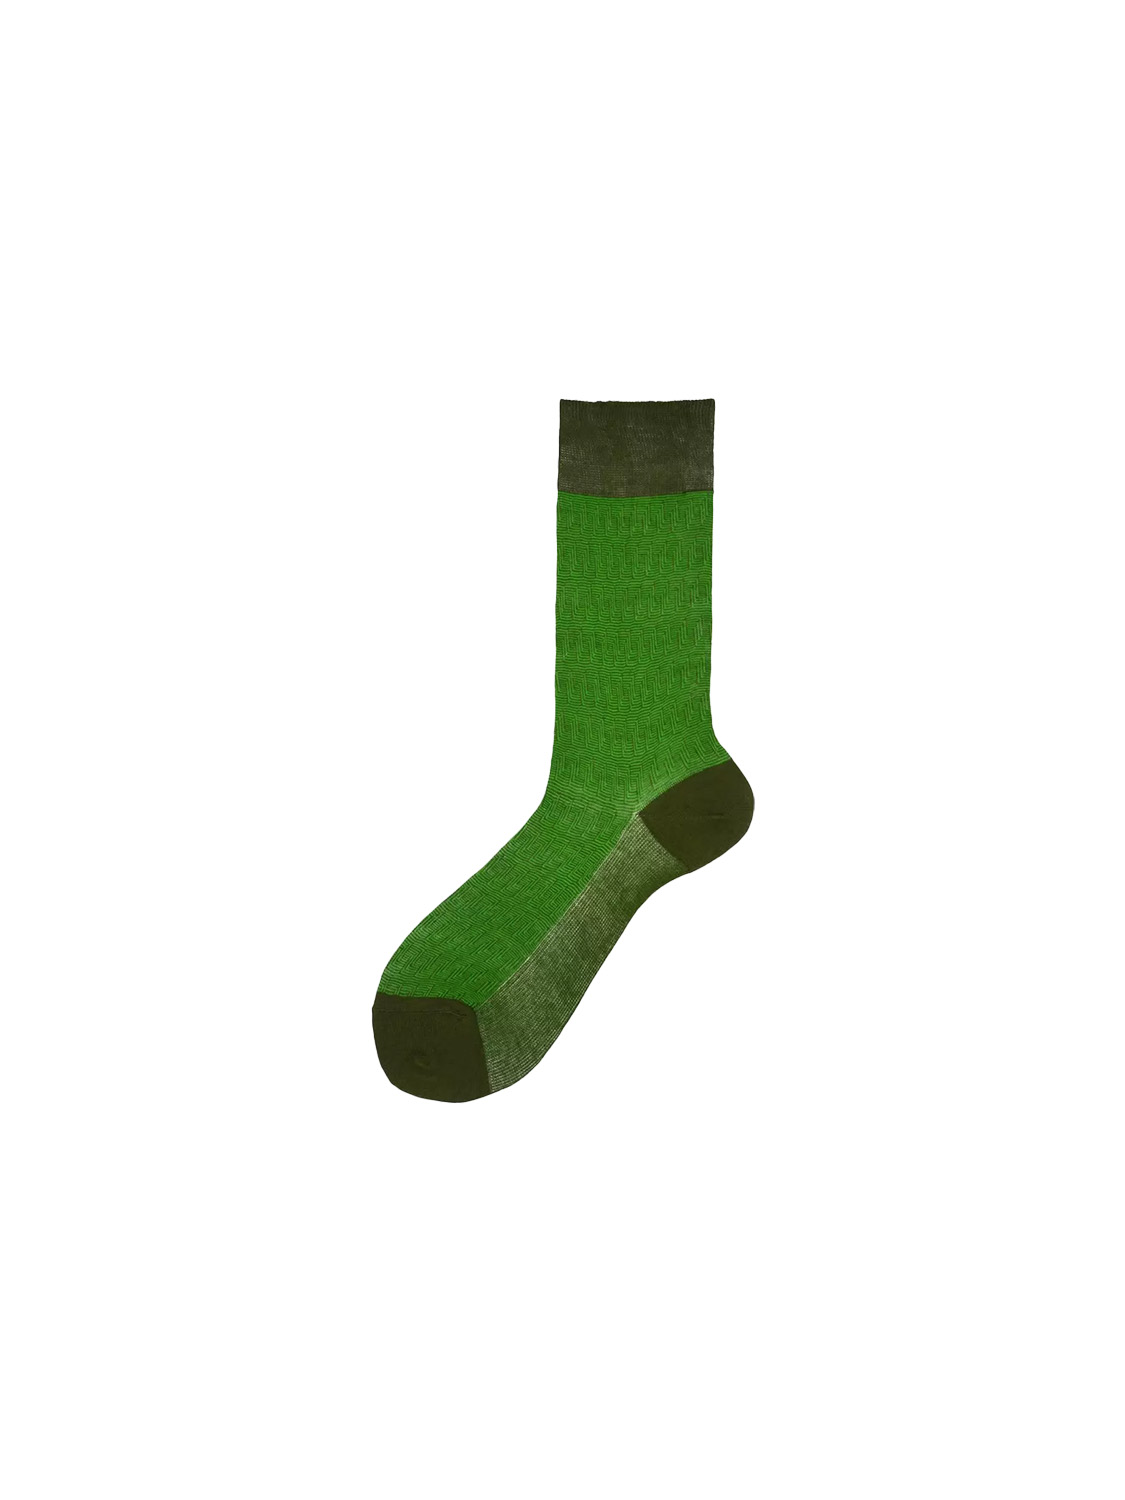 Alto Pyne - Calzini corti in cotone con motivo a righe   verde Taglia unica